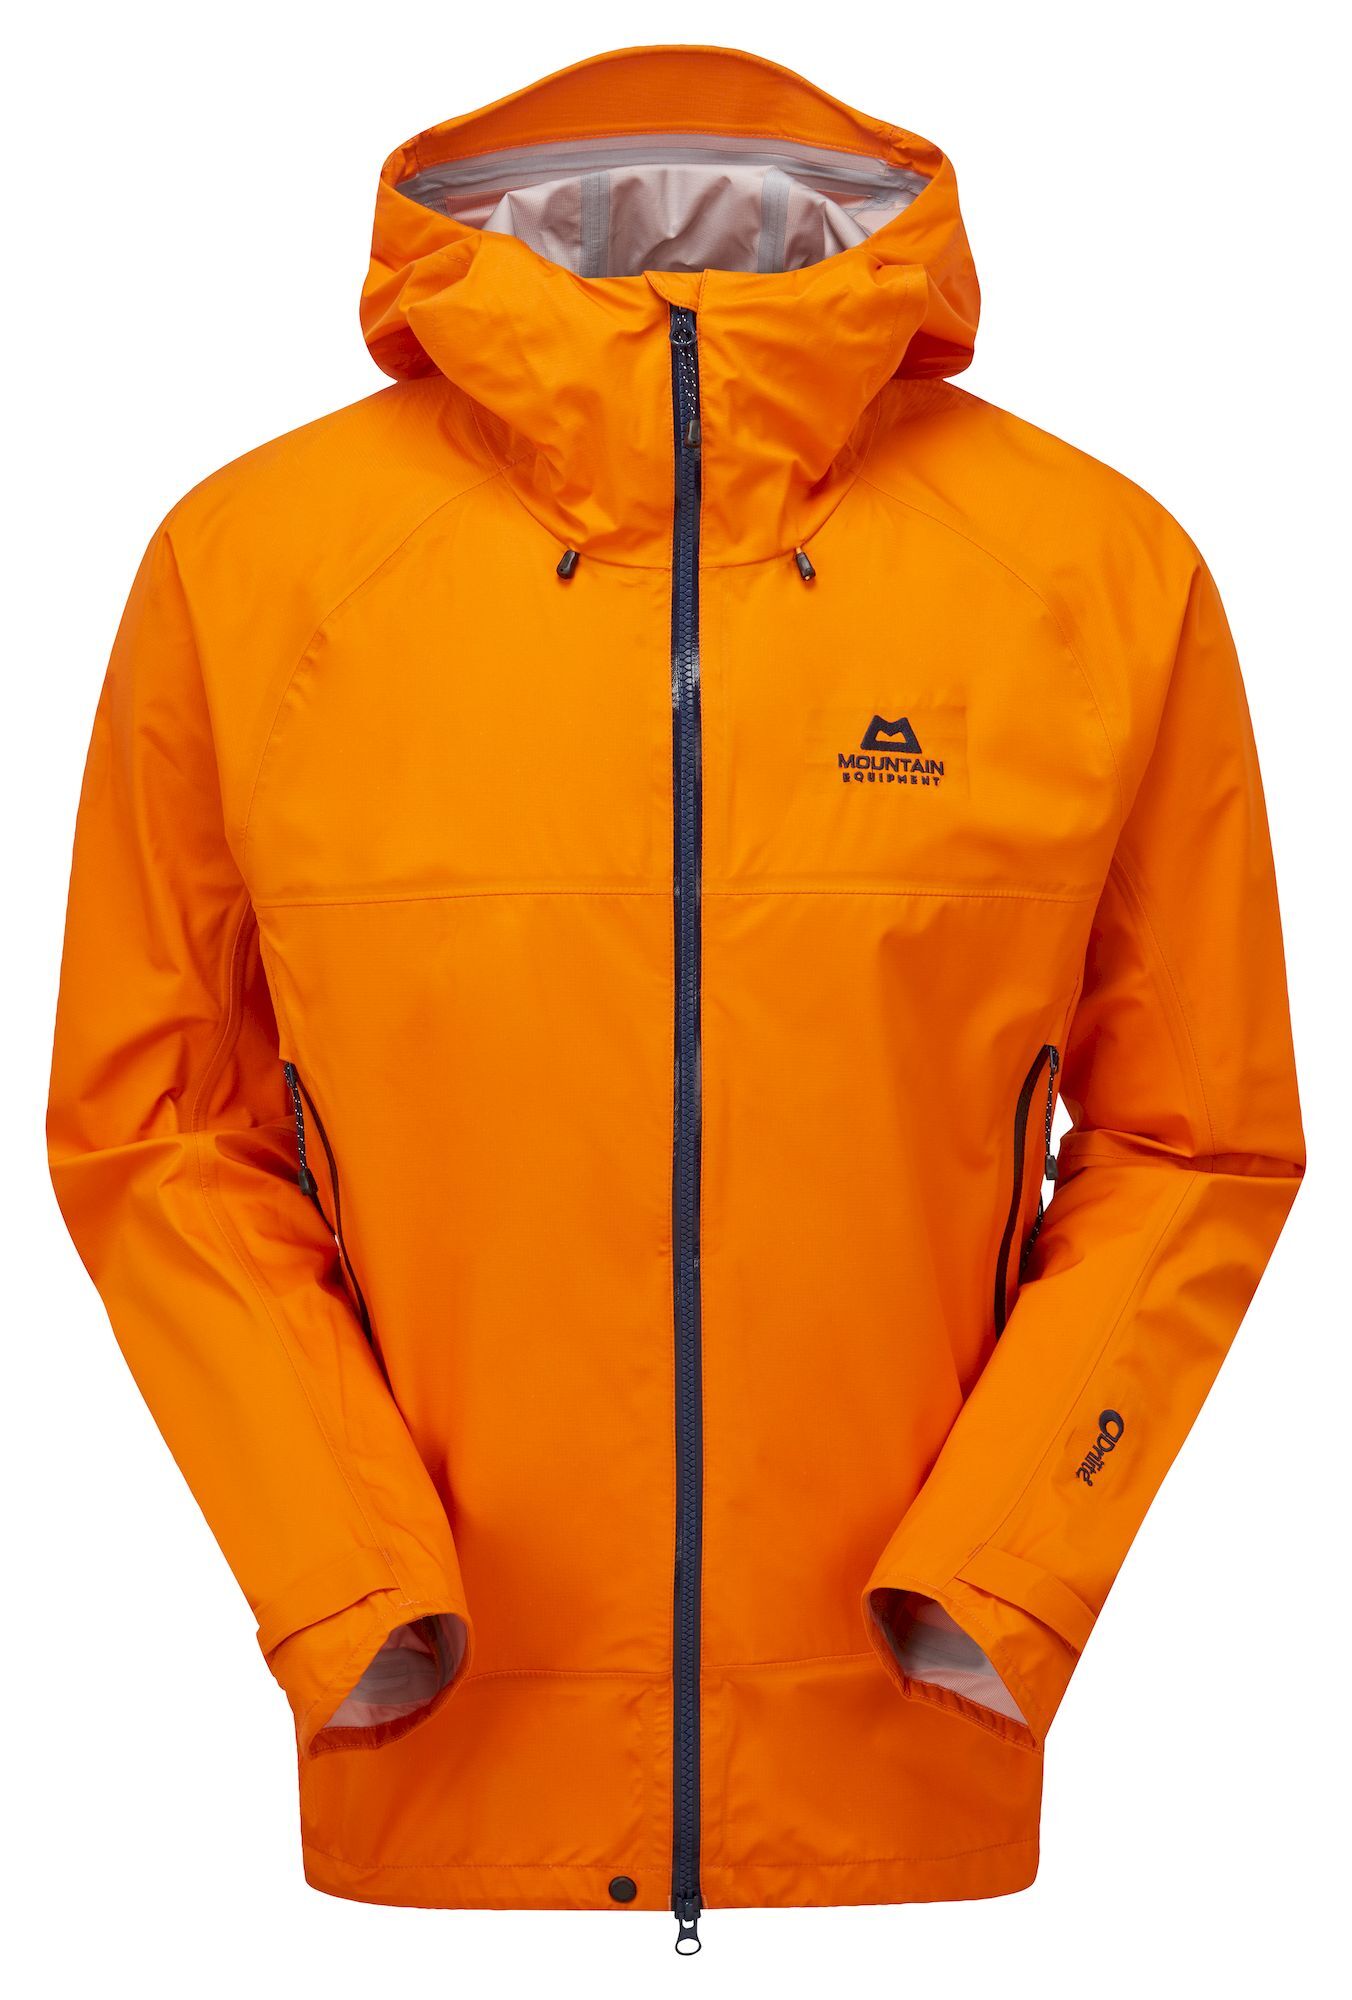 Mountain Equipment Odyssey Jacket - Waterproof jacket - Men's | Hardloop